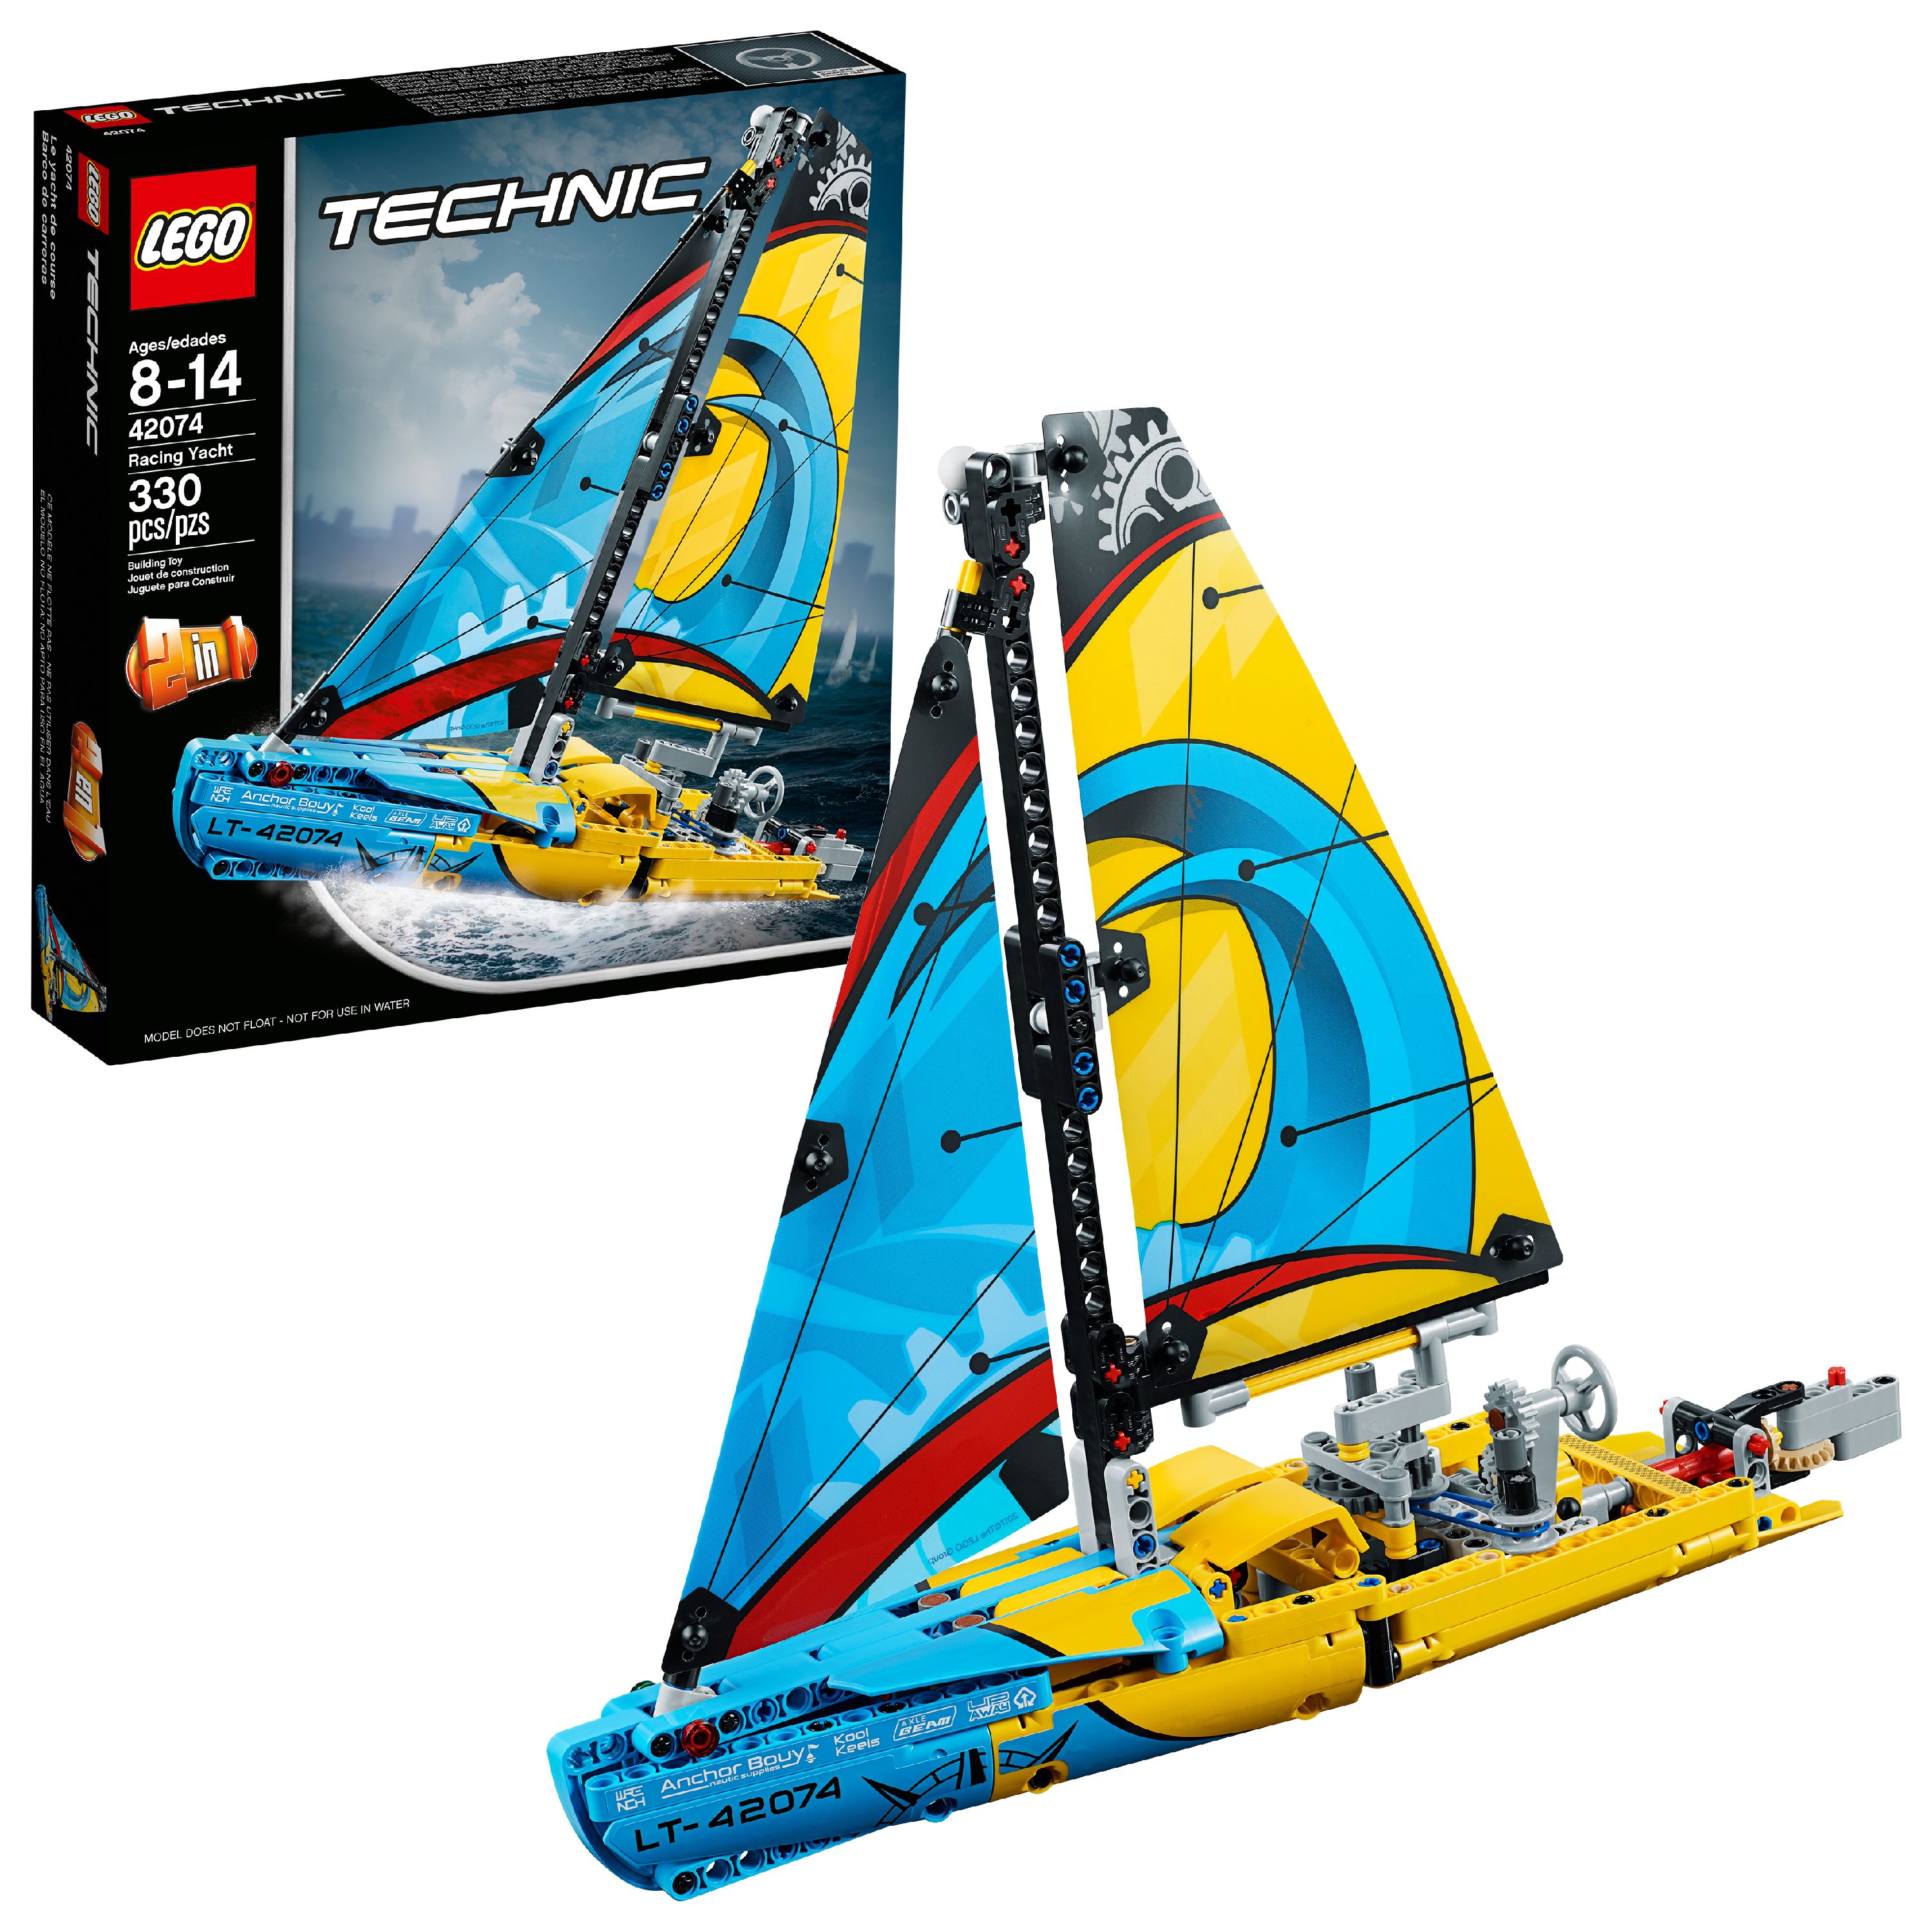 LEGO Technic Racing Yacht 42074 - image 1 of 7